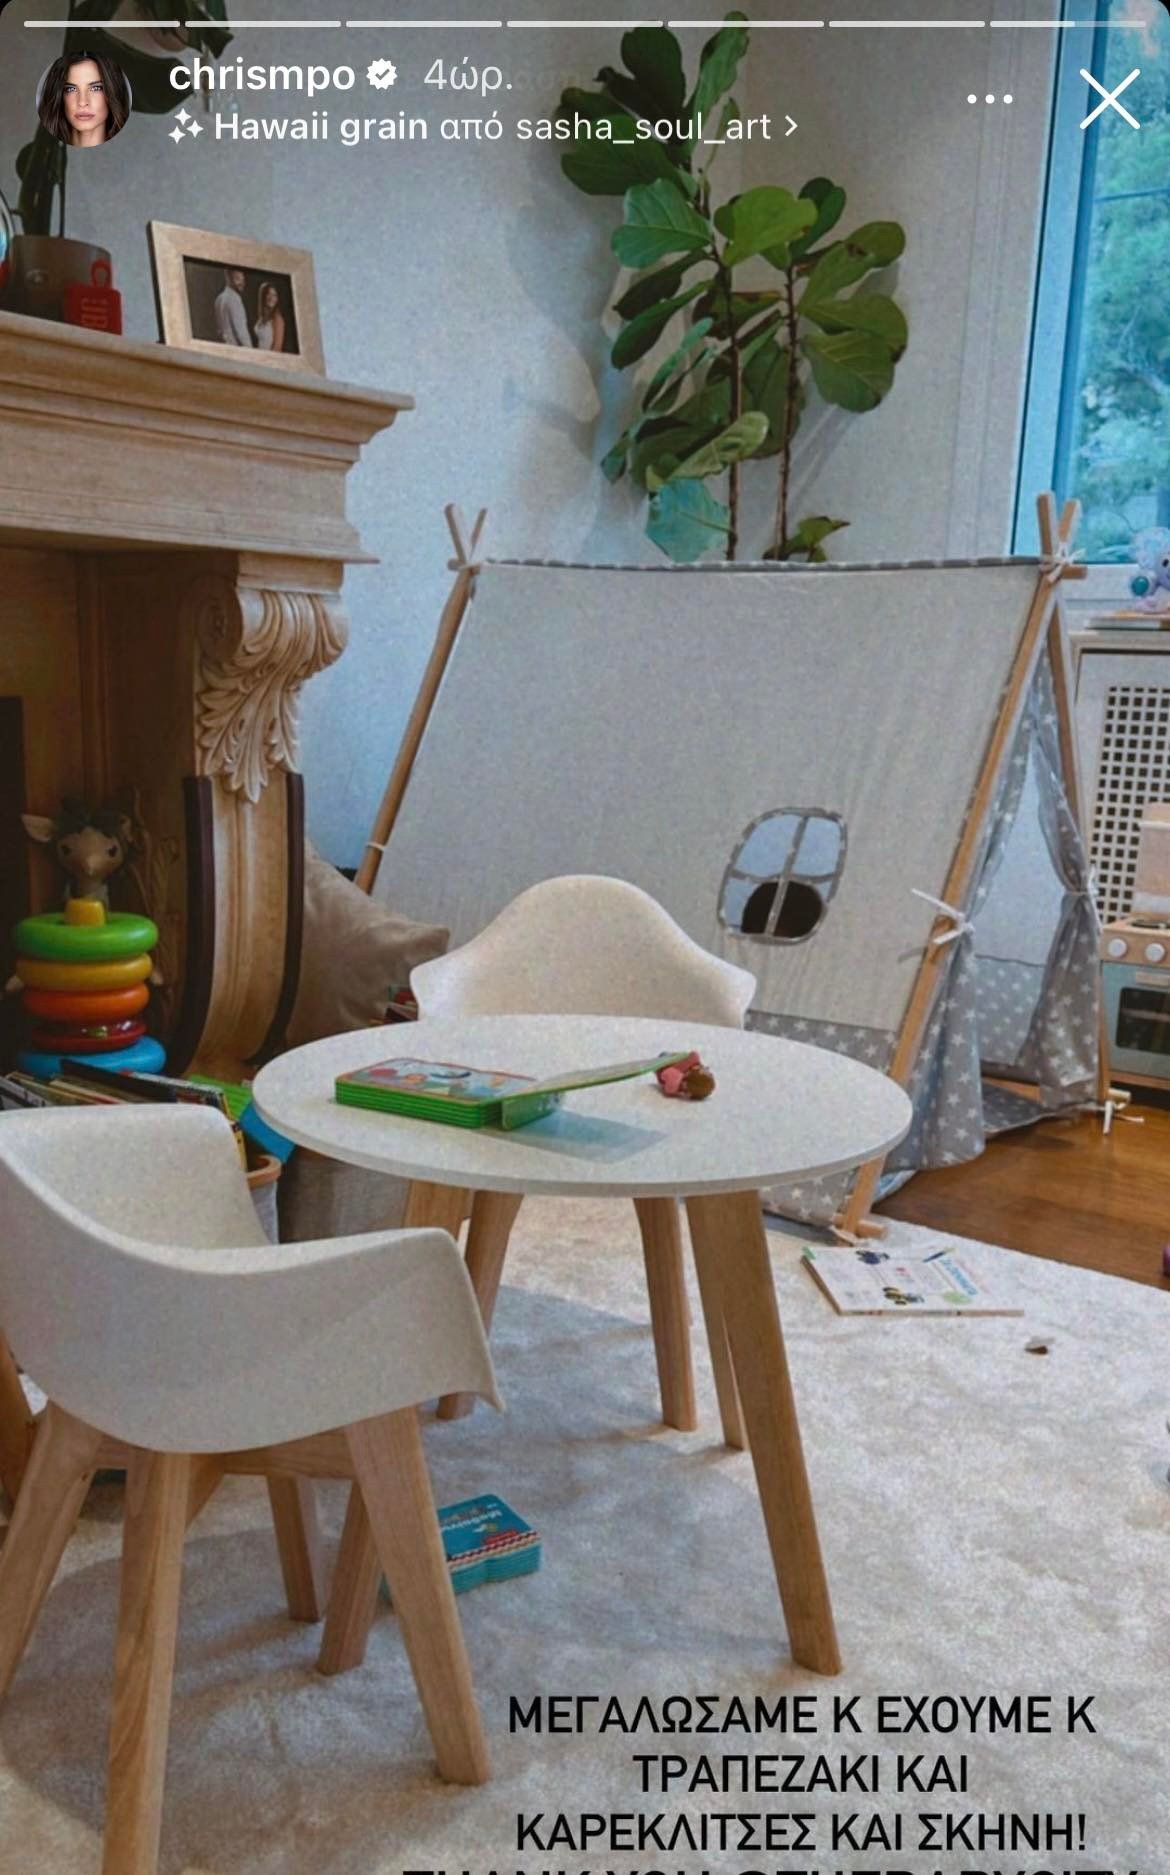 Χριστίνα Μπόμπα: Η cozy γωνιά του σπιτιού της που παίζουν οι δίδυμες κόρες της- Το λευκό τραπέζι και η σκήνη εντυπωσιάζουν